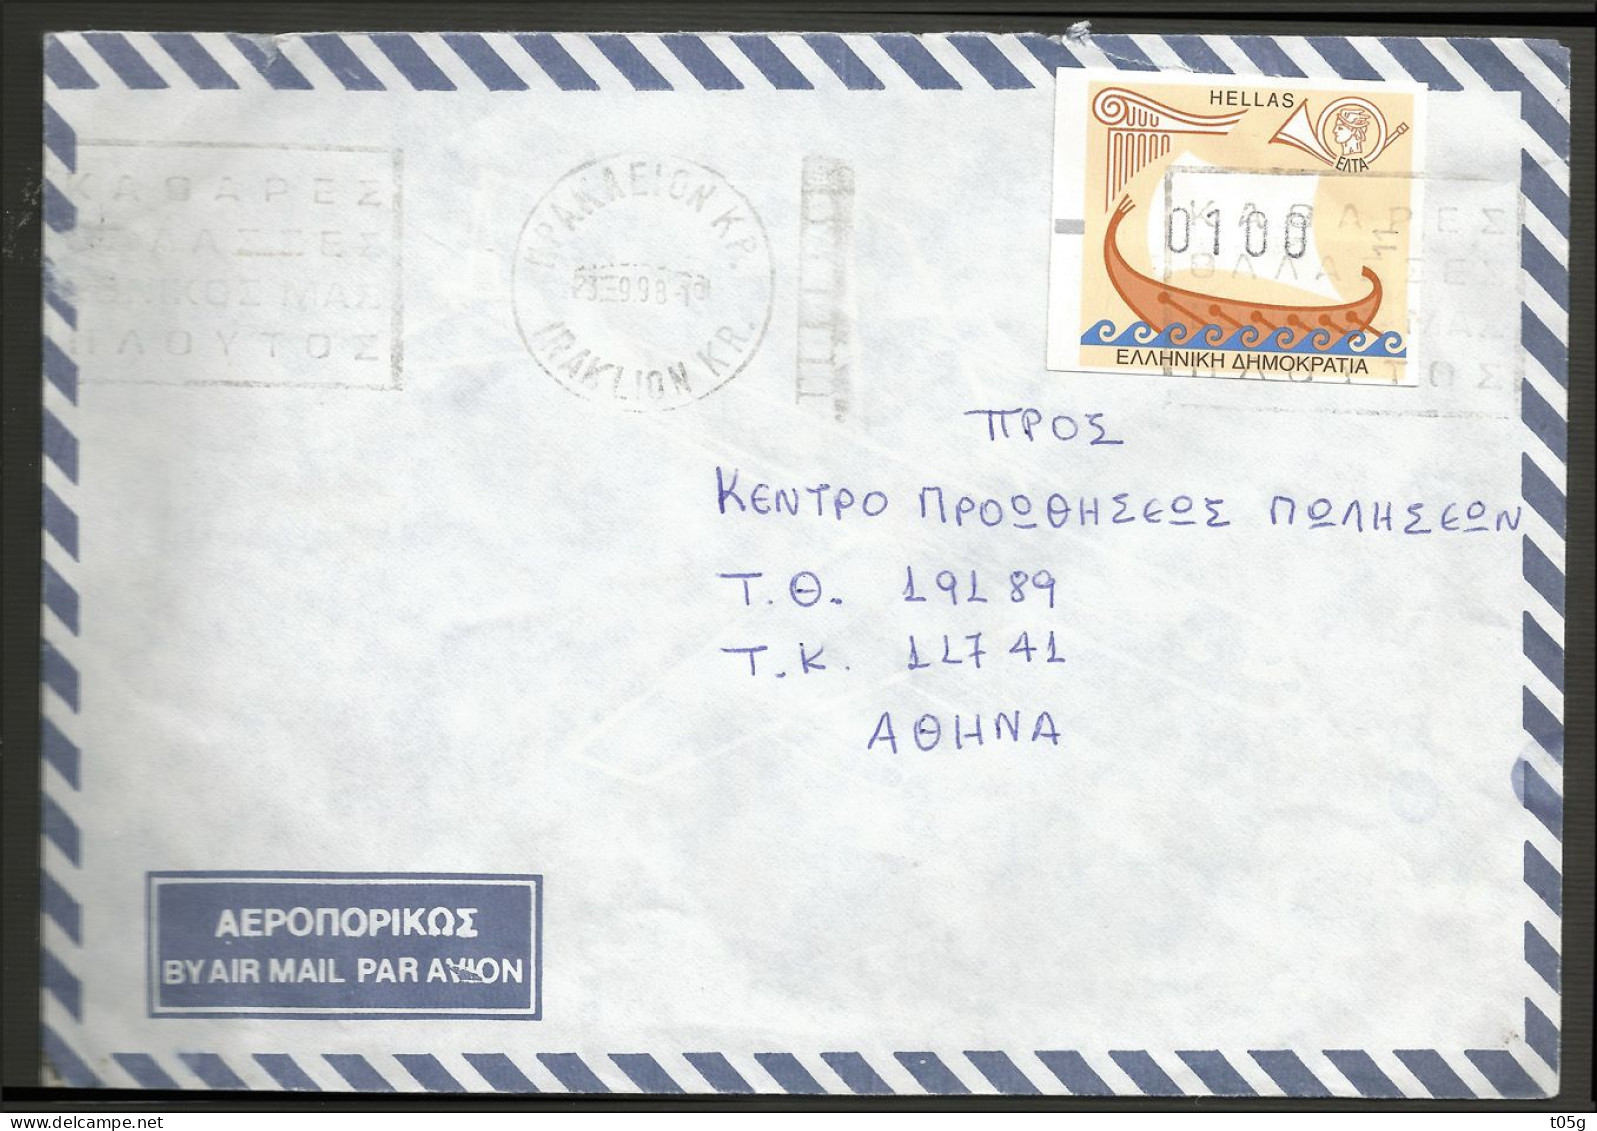 GREECE- GRECE-HELLAS 1998: cover With 100drx Frama. Post Office No:11 (Heraklion Central Crete)) Canc. IRAKLION 23.9.98 - Viñetas De Franqueo [ATM]